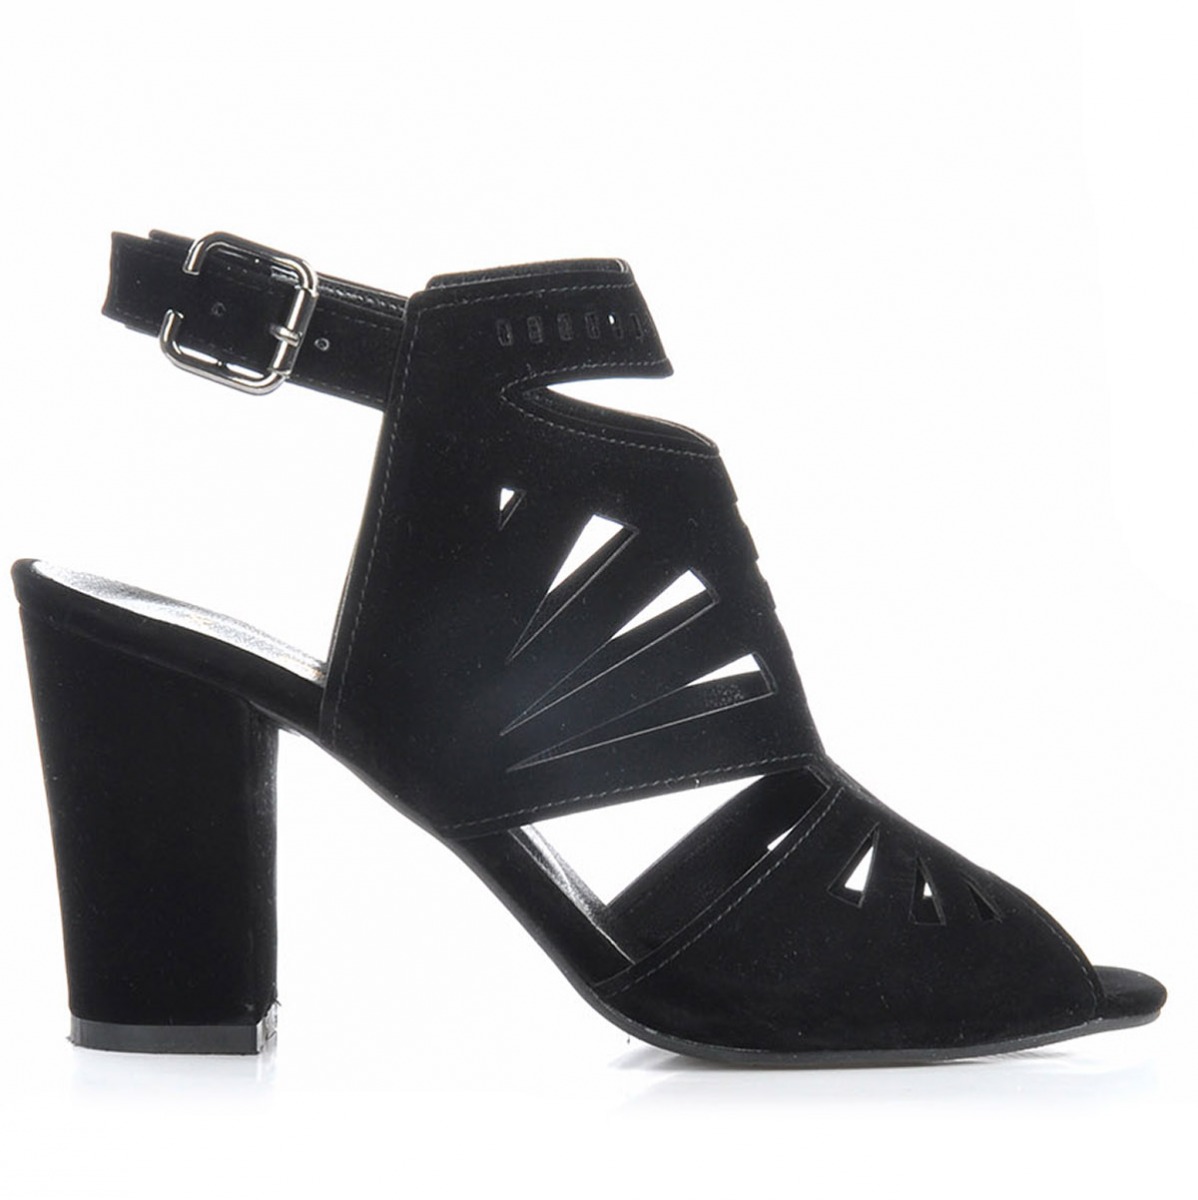 Flo Kadın  Siyah-Süet Klasik Topuklu Ayakkabı VZN-229Y. 1